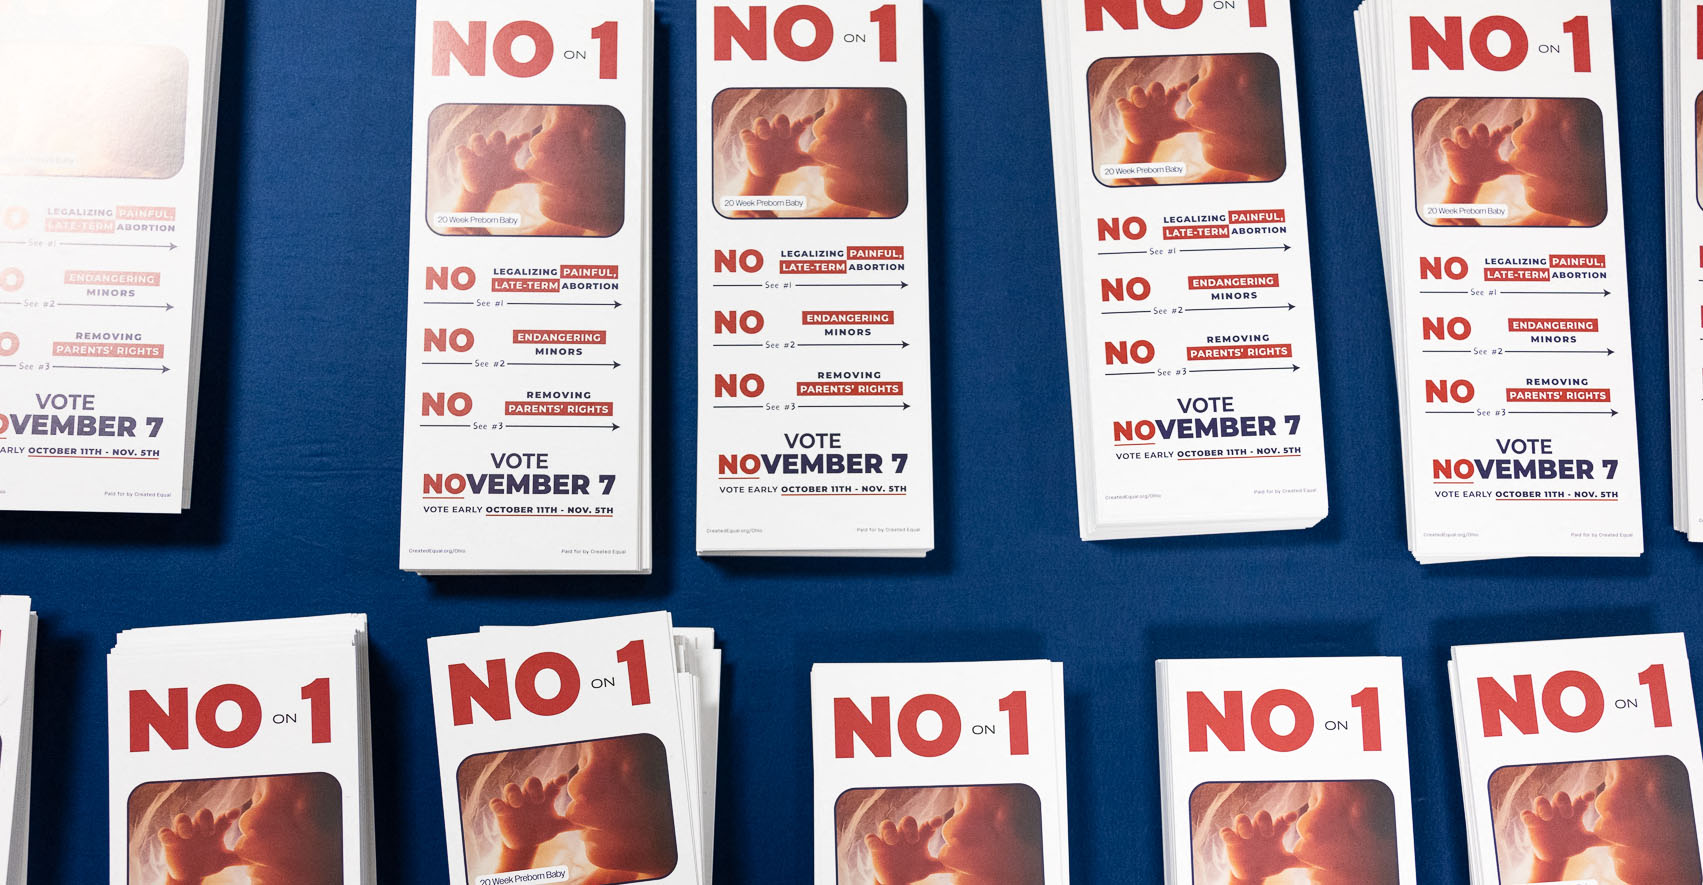 BREAKING: Future of Ohio Abortion Amendment Decided in Ballot Measure